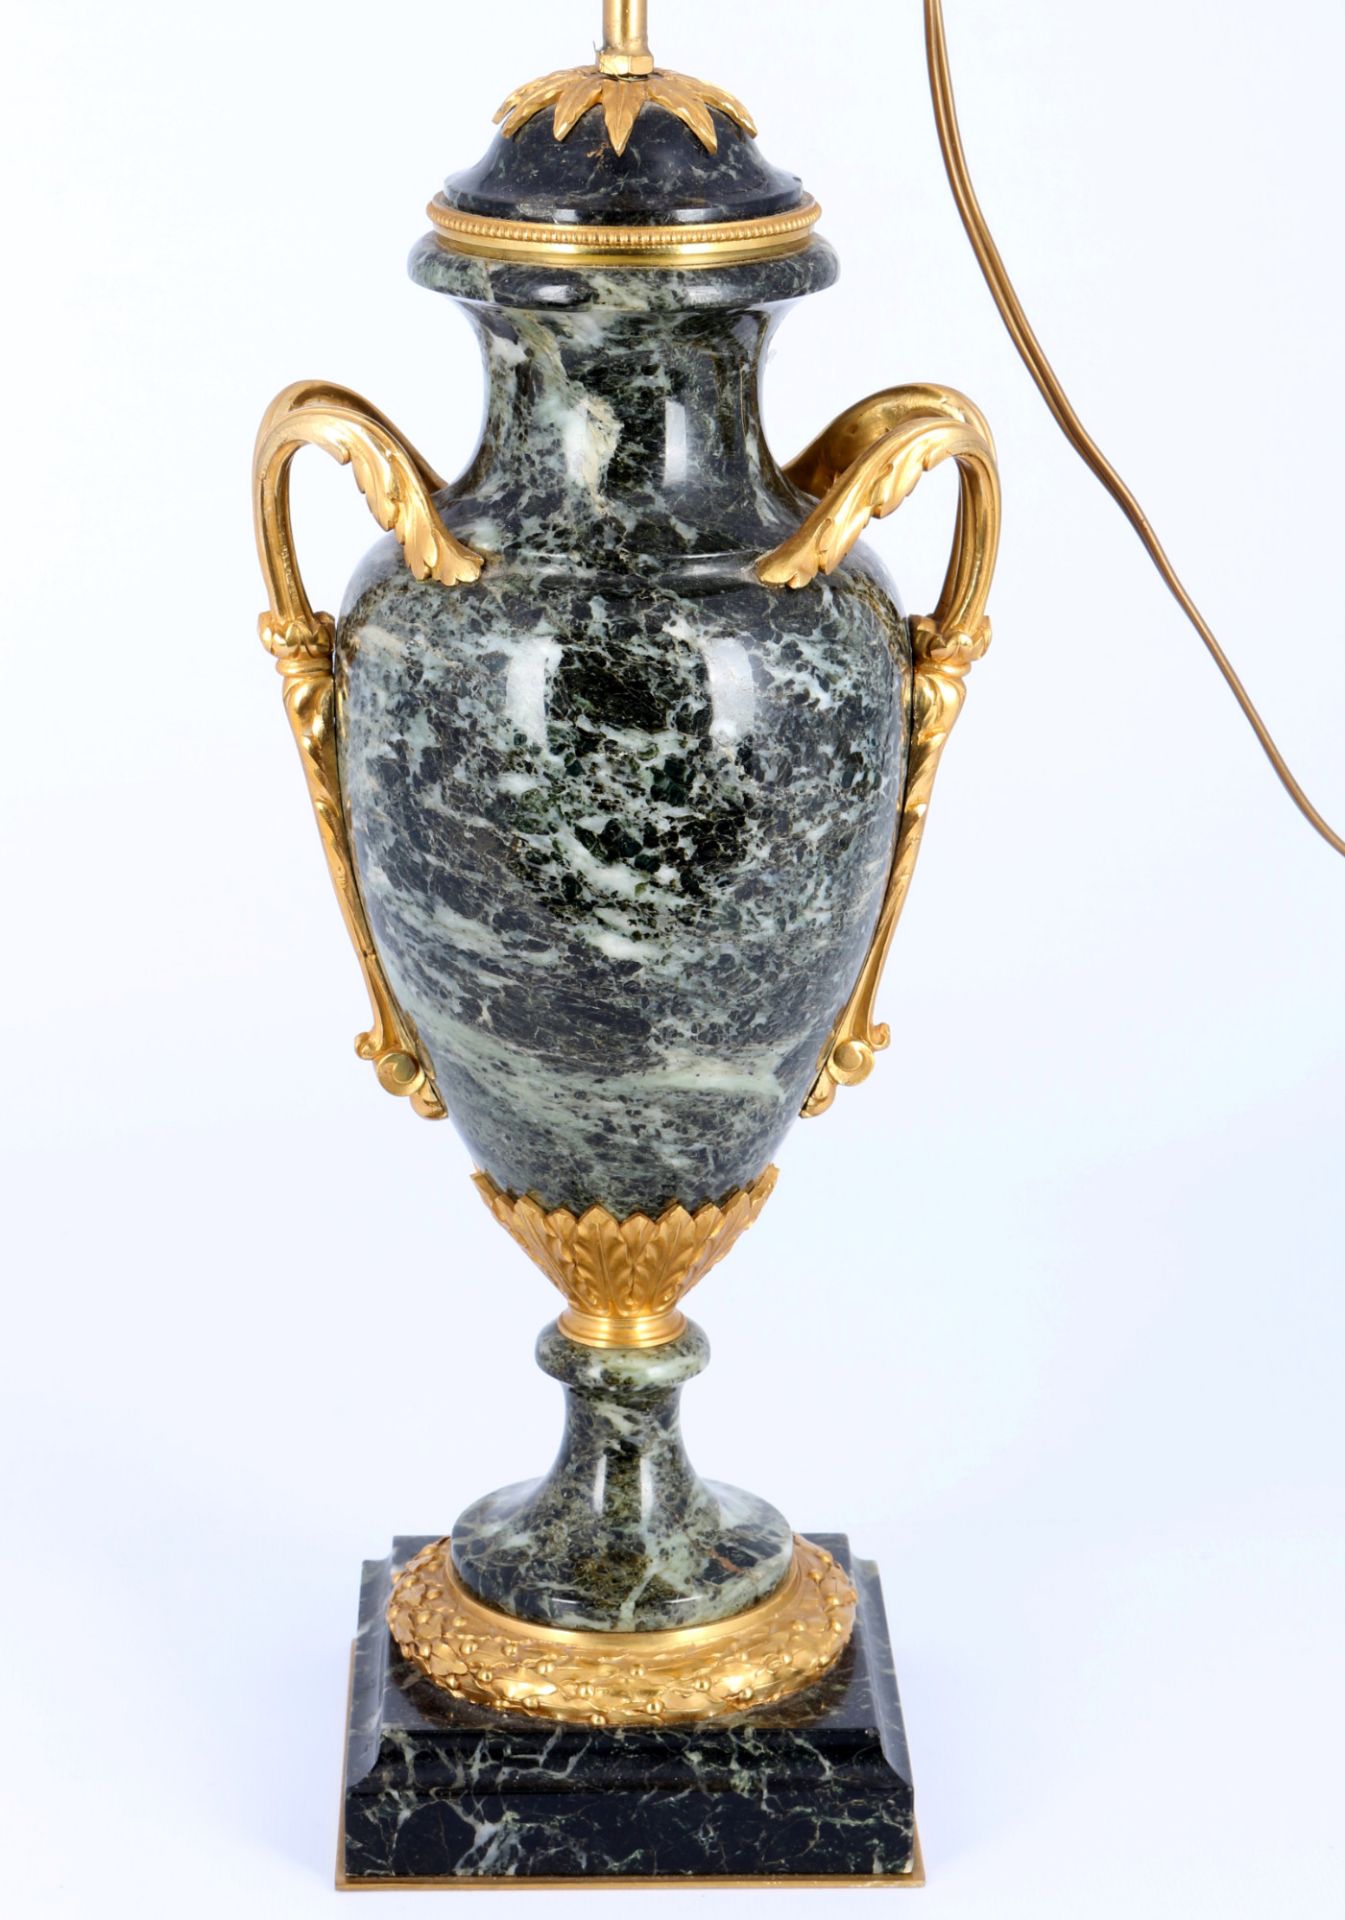 Vasenlampe in Louis XV Stil , - Bild 2 aus 4